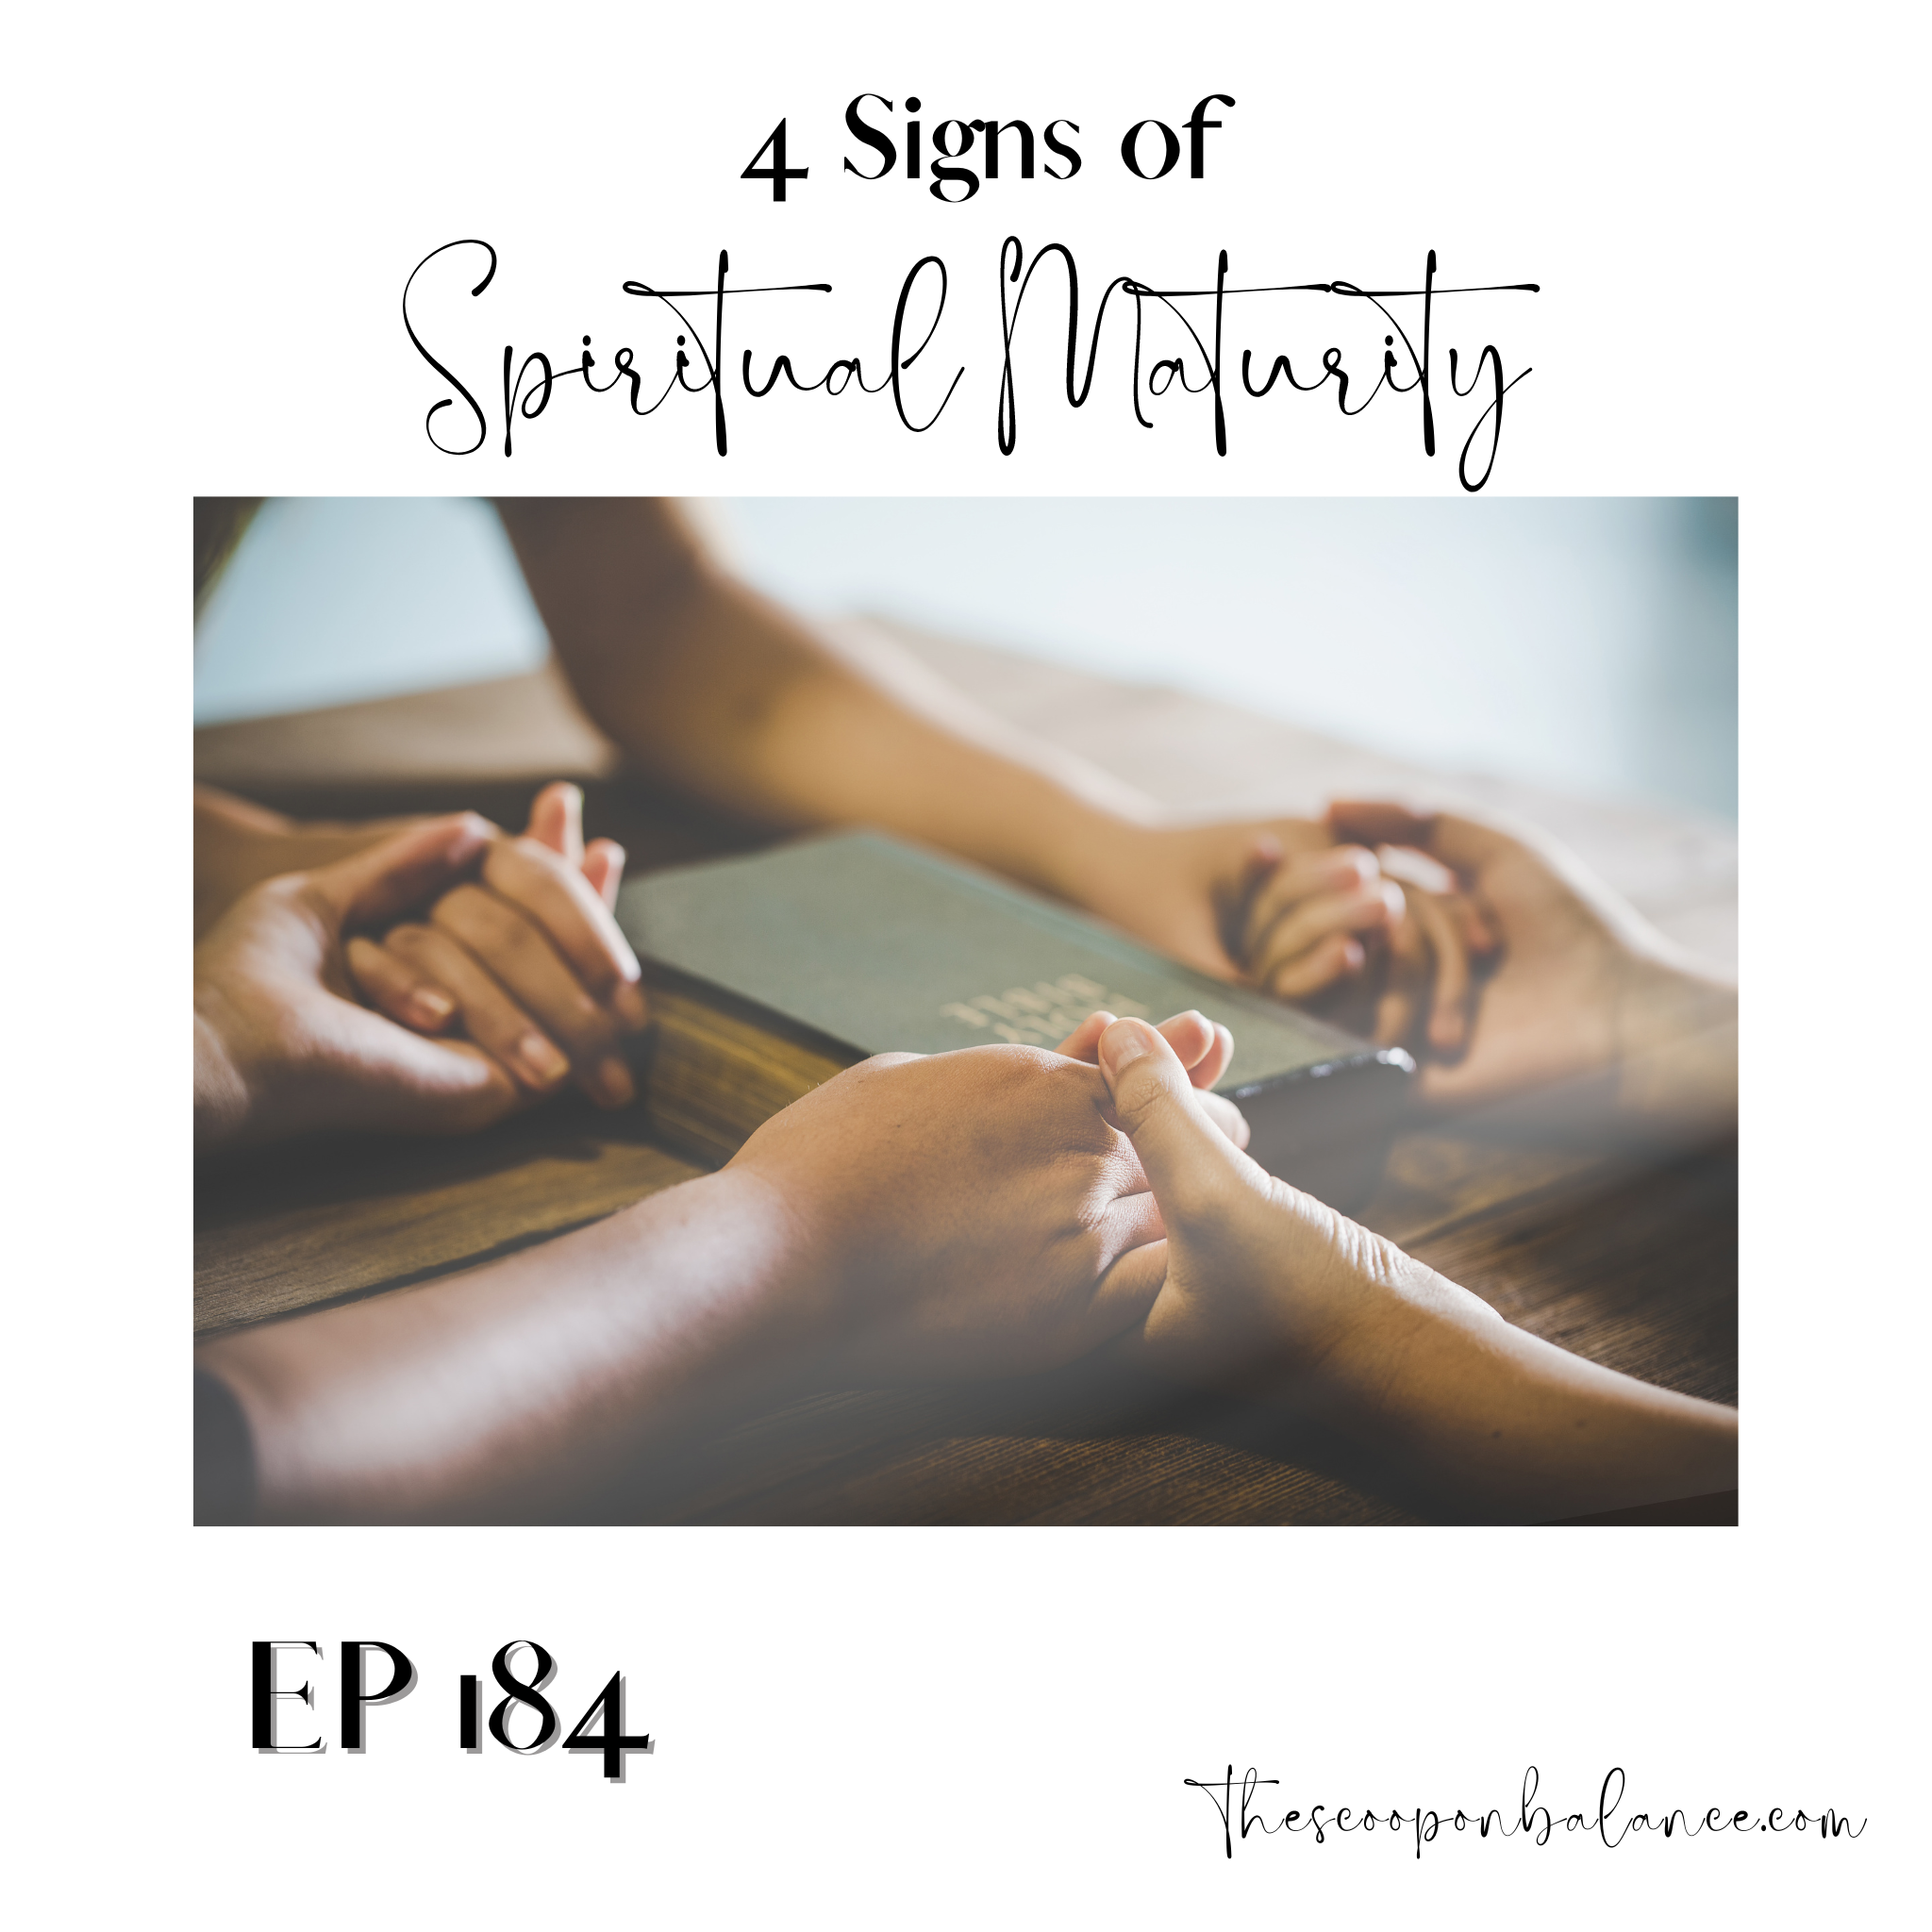 Ep 184: 4 Signs of Spiritual Maturity